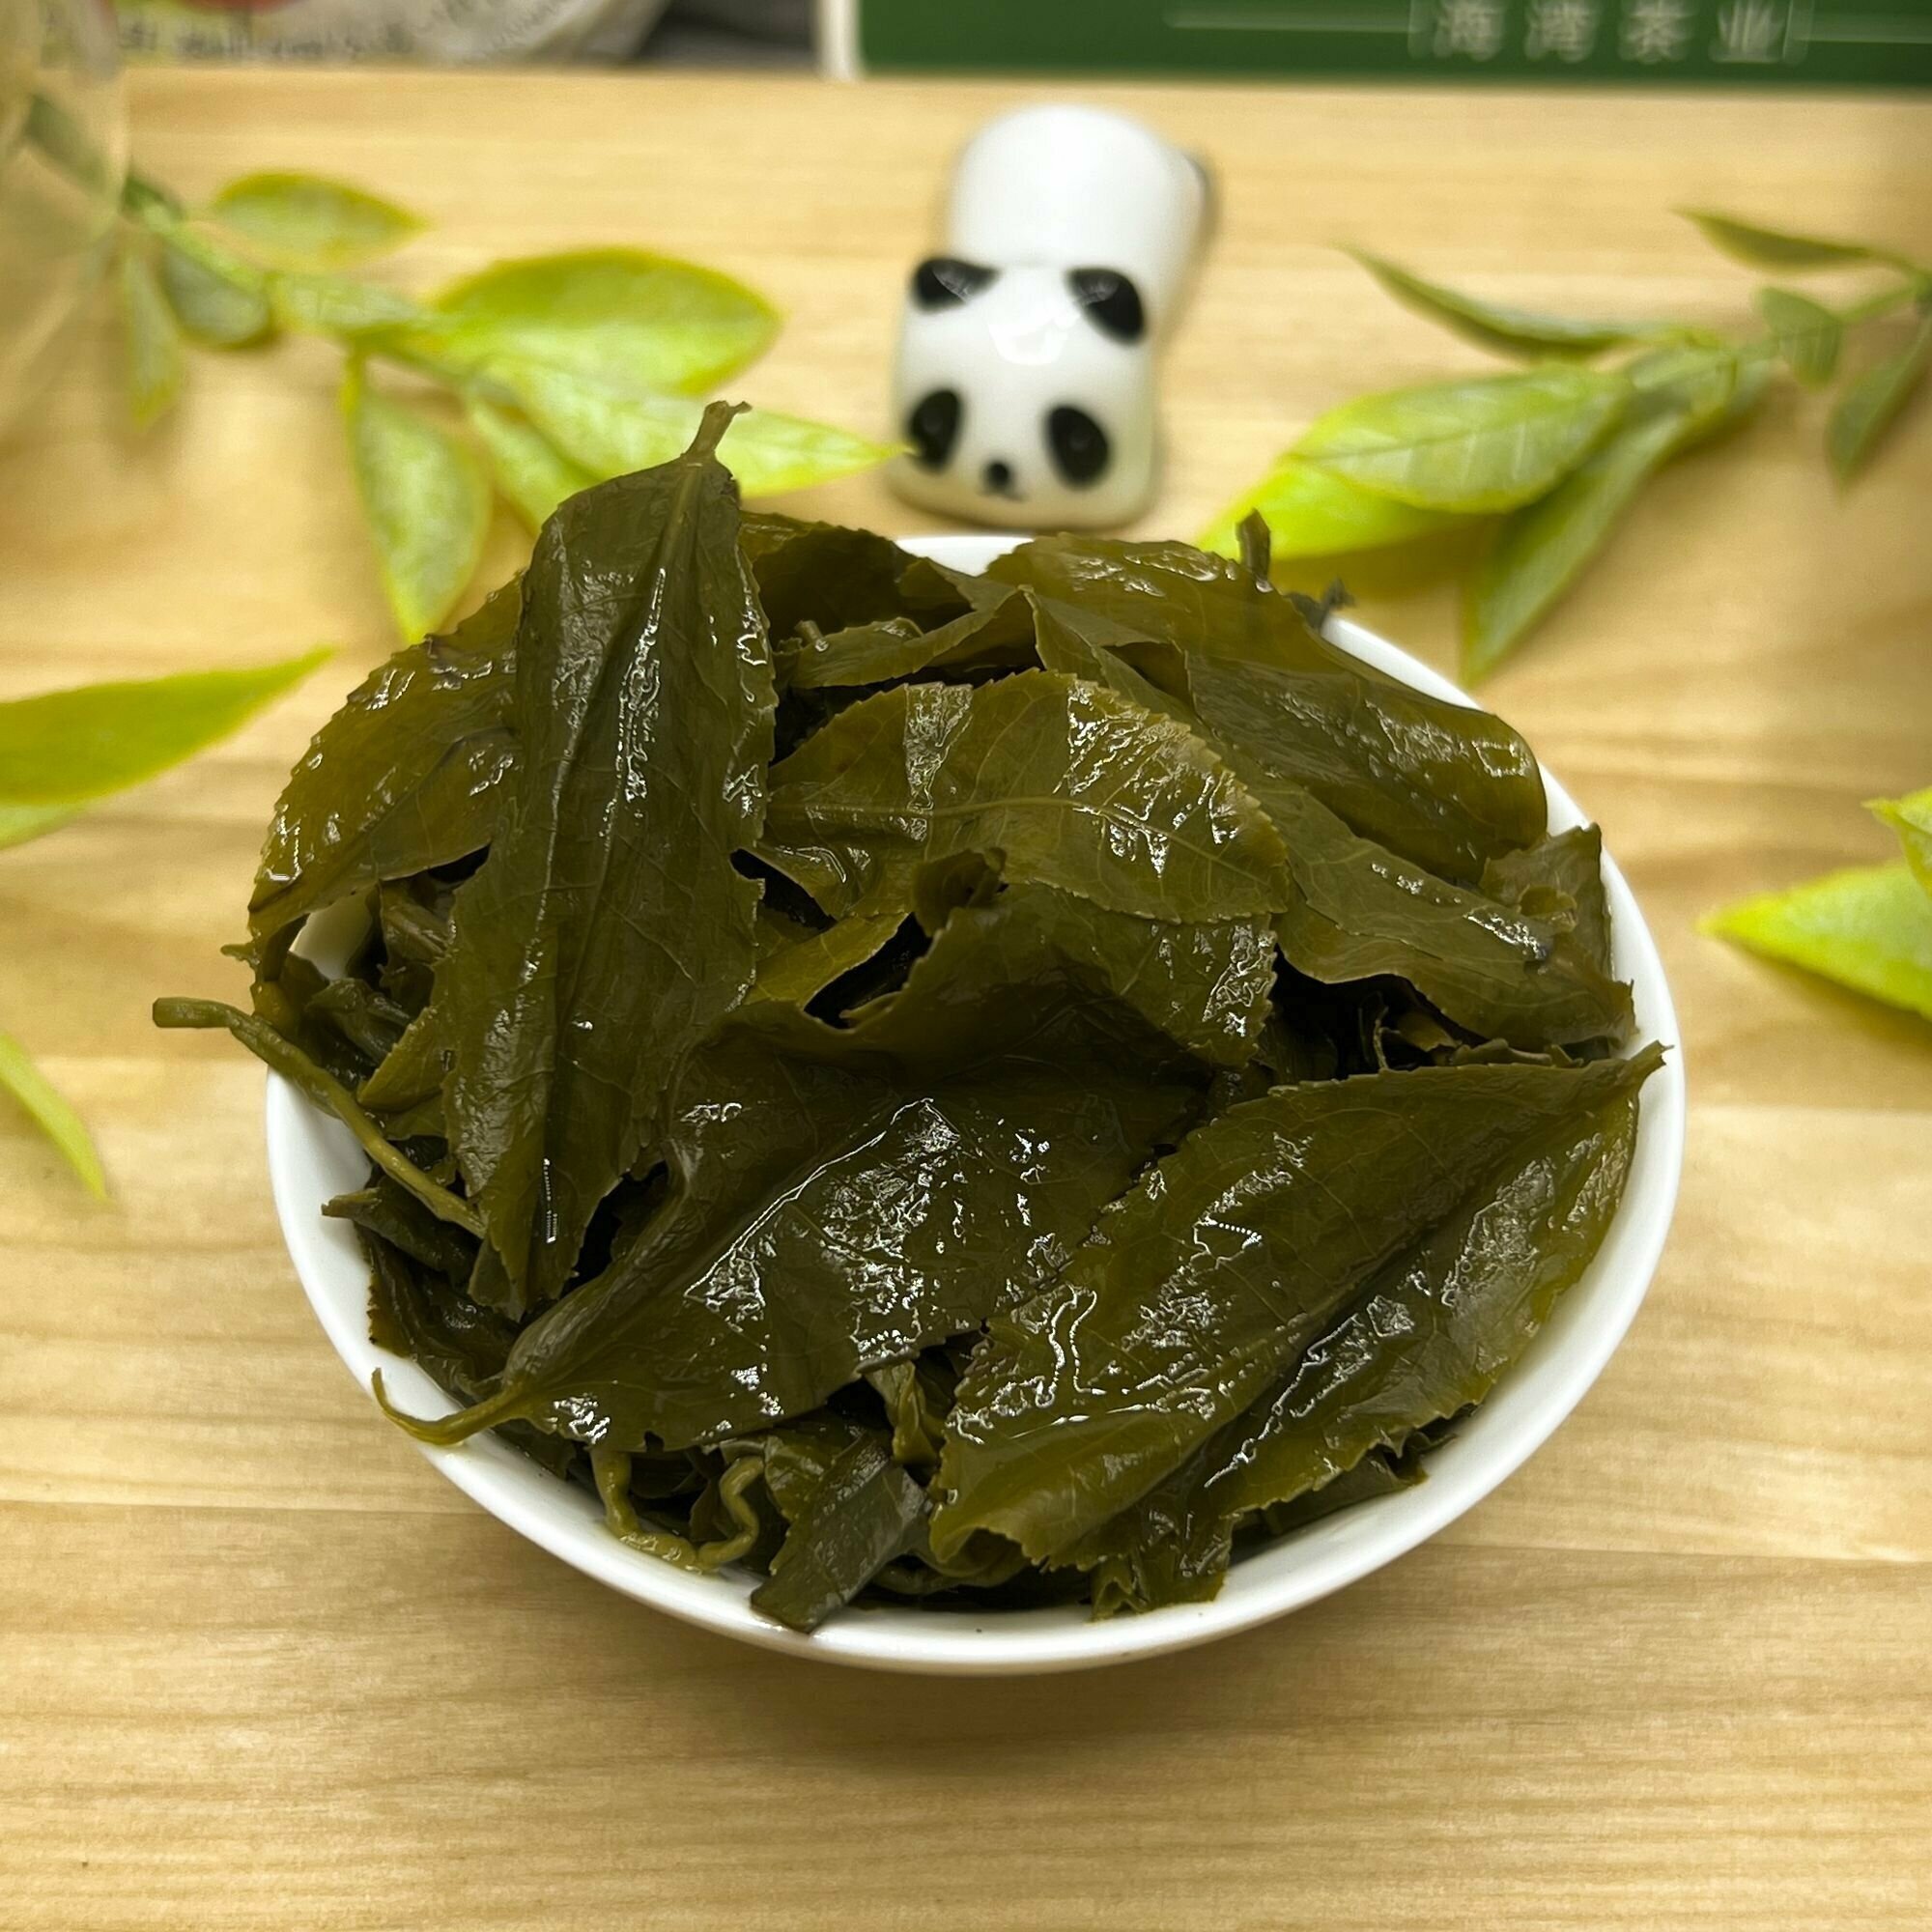 Китайский зеленый чай Жасминовый Ганпаудер Полезный чай / HEALTHY TEA, 250 г